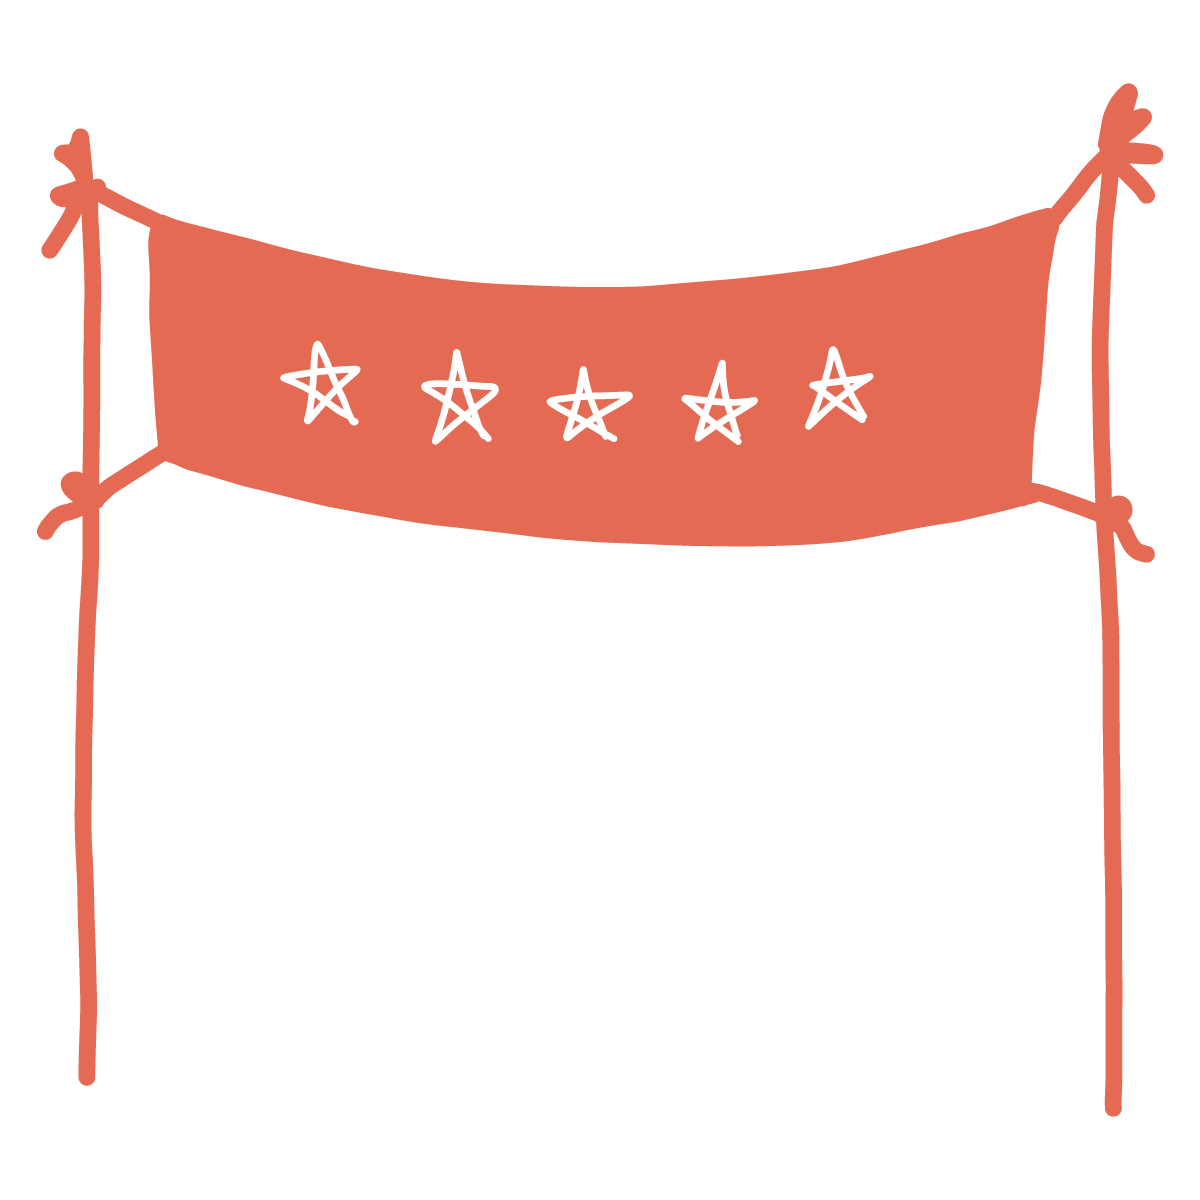 illustration of a banner